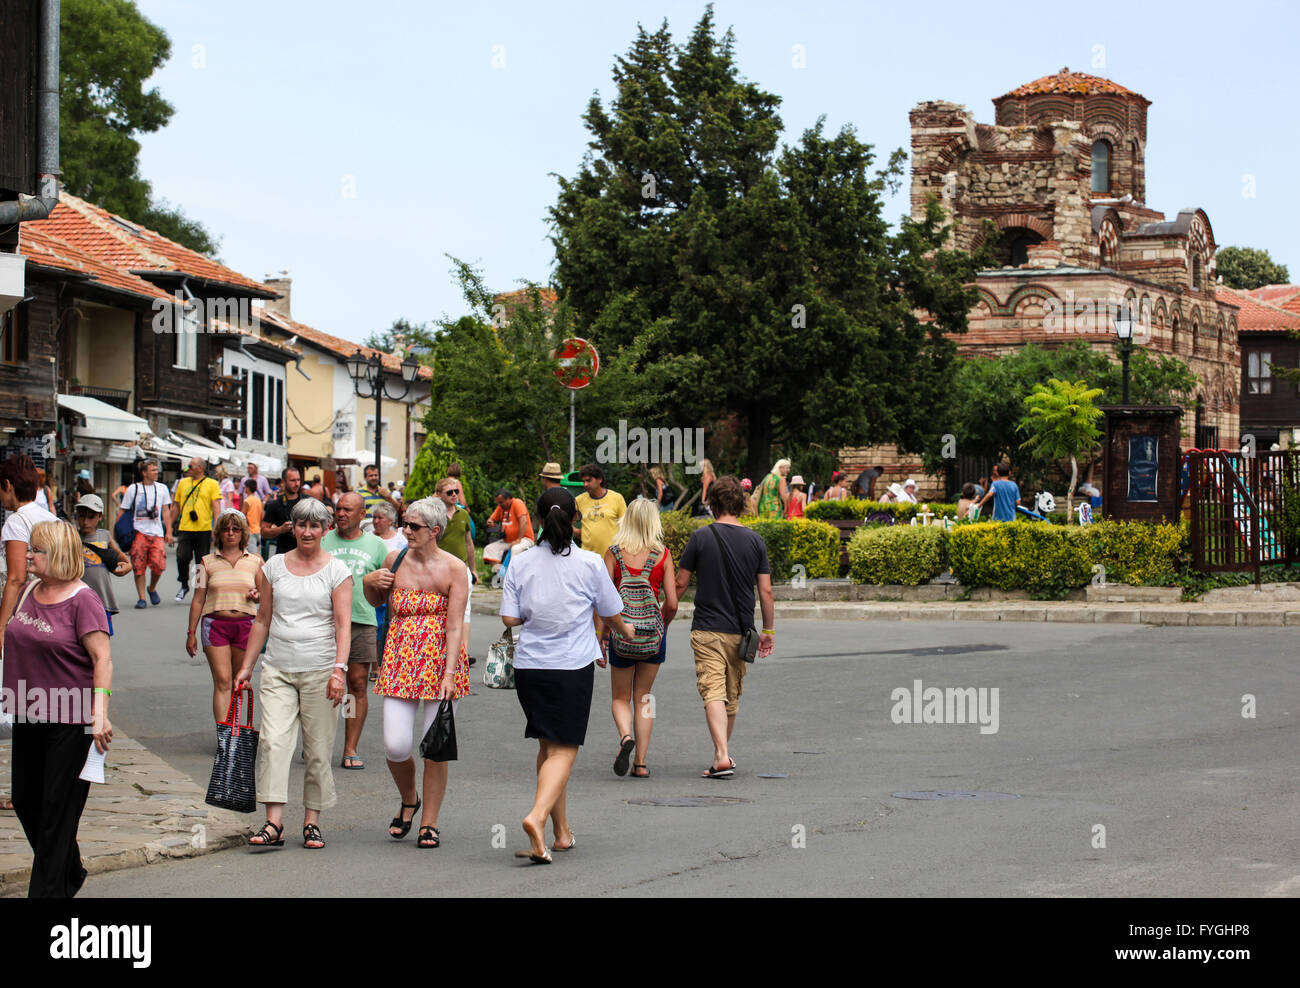 Nessebar, Bulgarien - 23.06.2013: Menschen besuchen die Altstadt am 23. Juni 2013 Tag von Nessebar, Bulgarien. Nessebar im Jahr 1956 wurde erklärt. Stockfoto